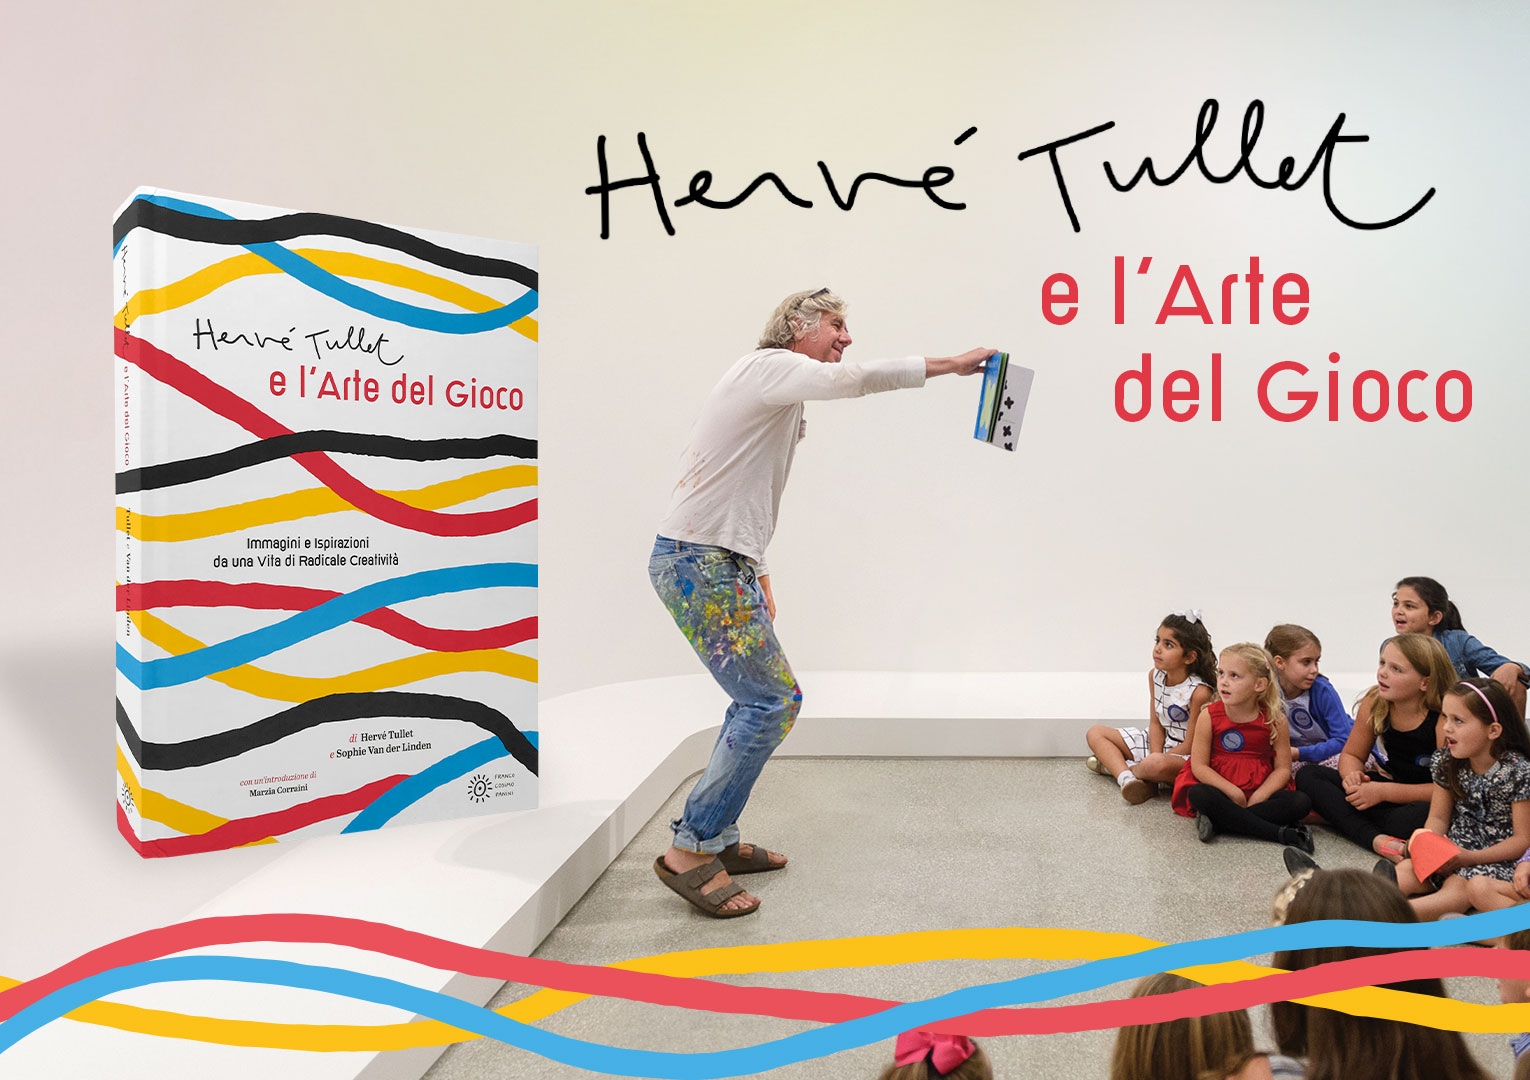 Hervé Tullet e l'Arte del Gioco